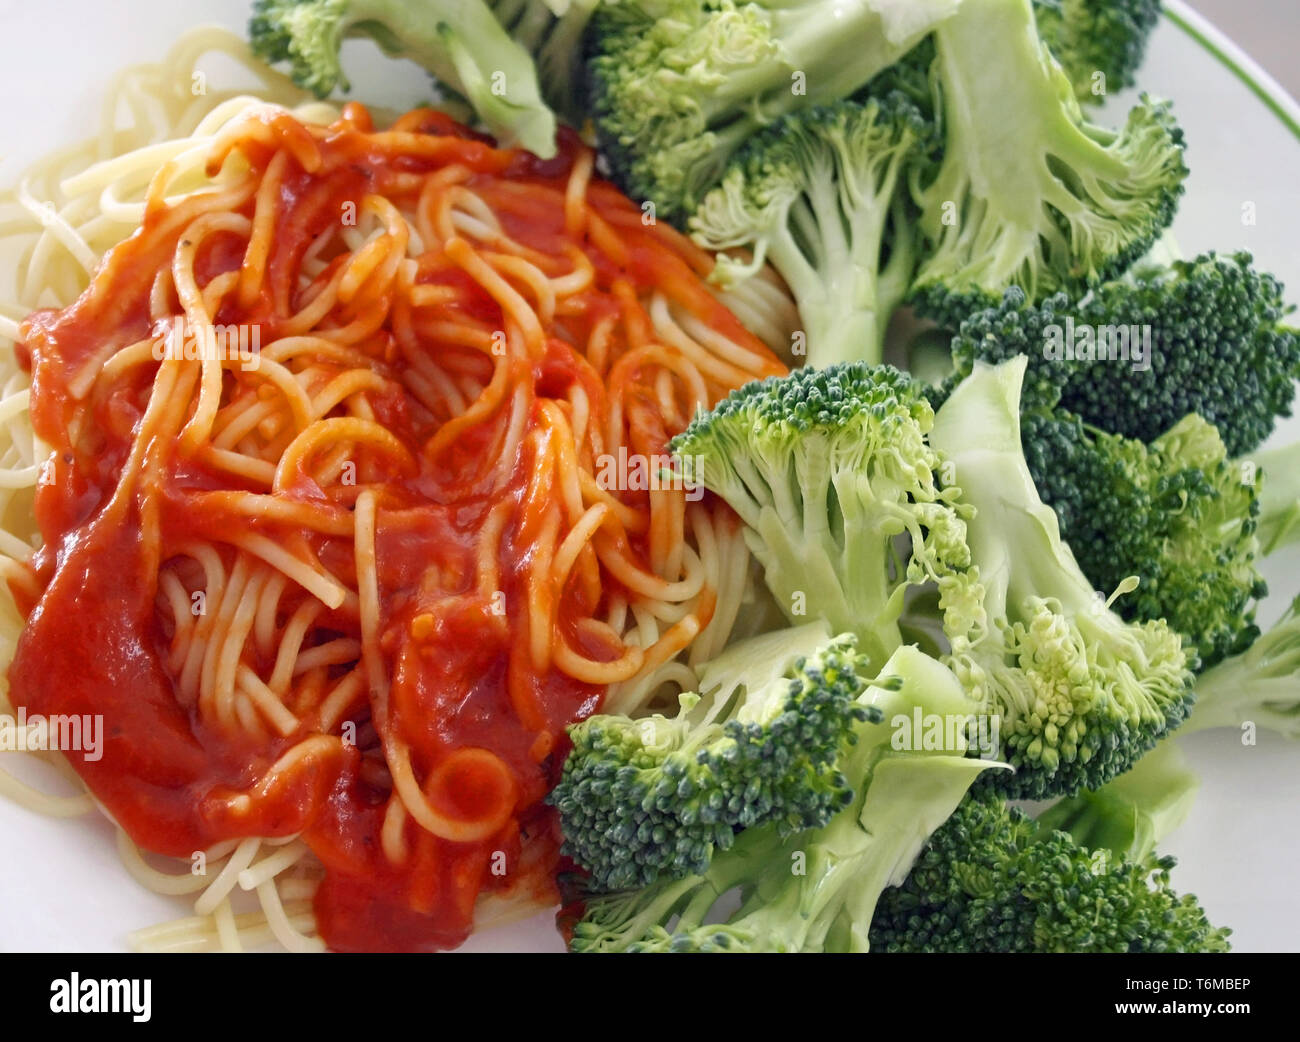 Les pâtes spaghetti avec une sauce tomate sans viande faits maison. Le brocoli frais biologiques sur le côté Banque D'Images